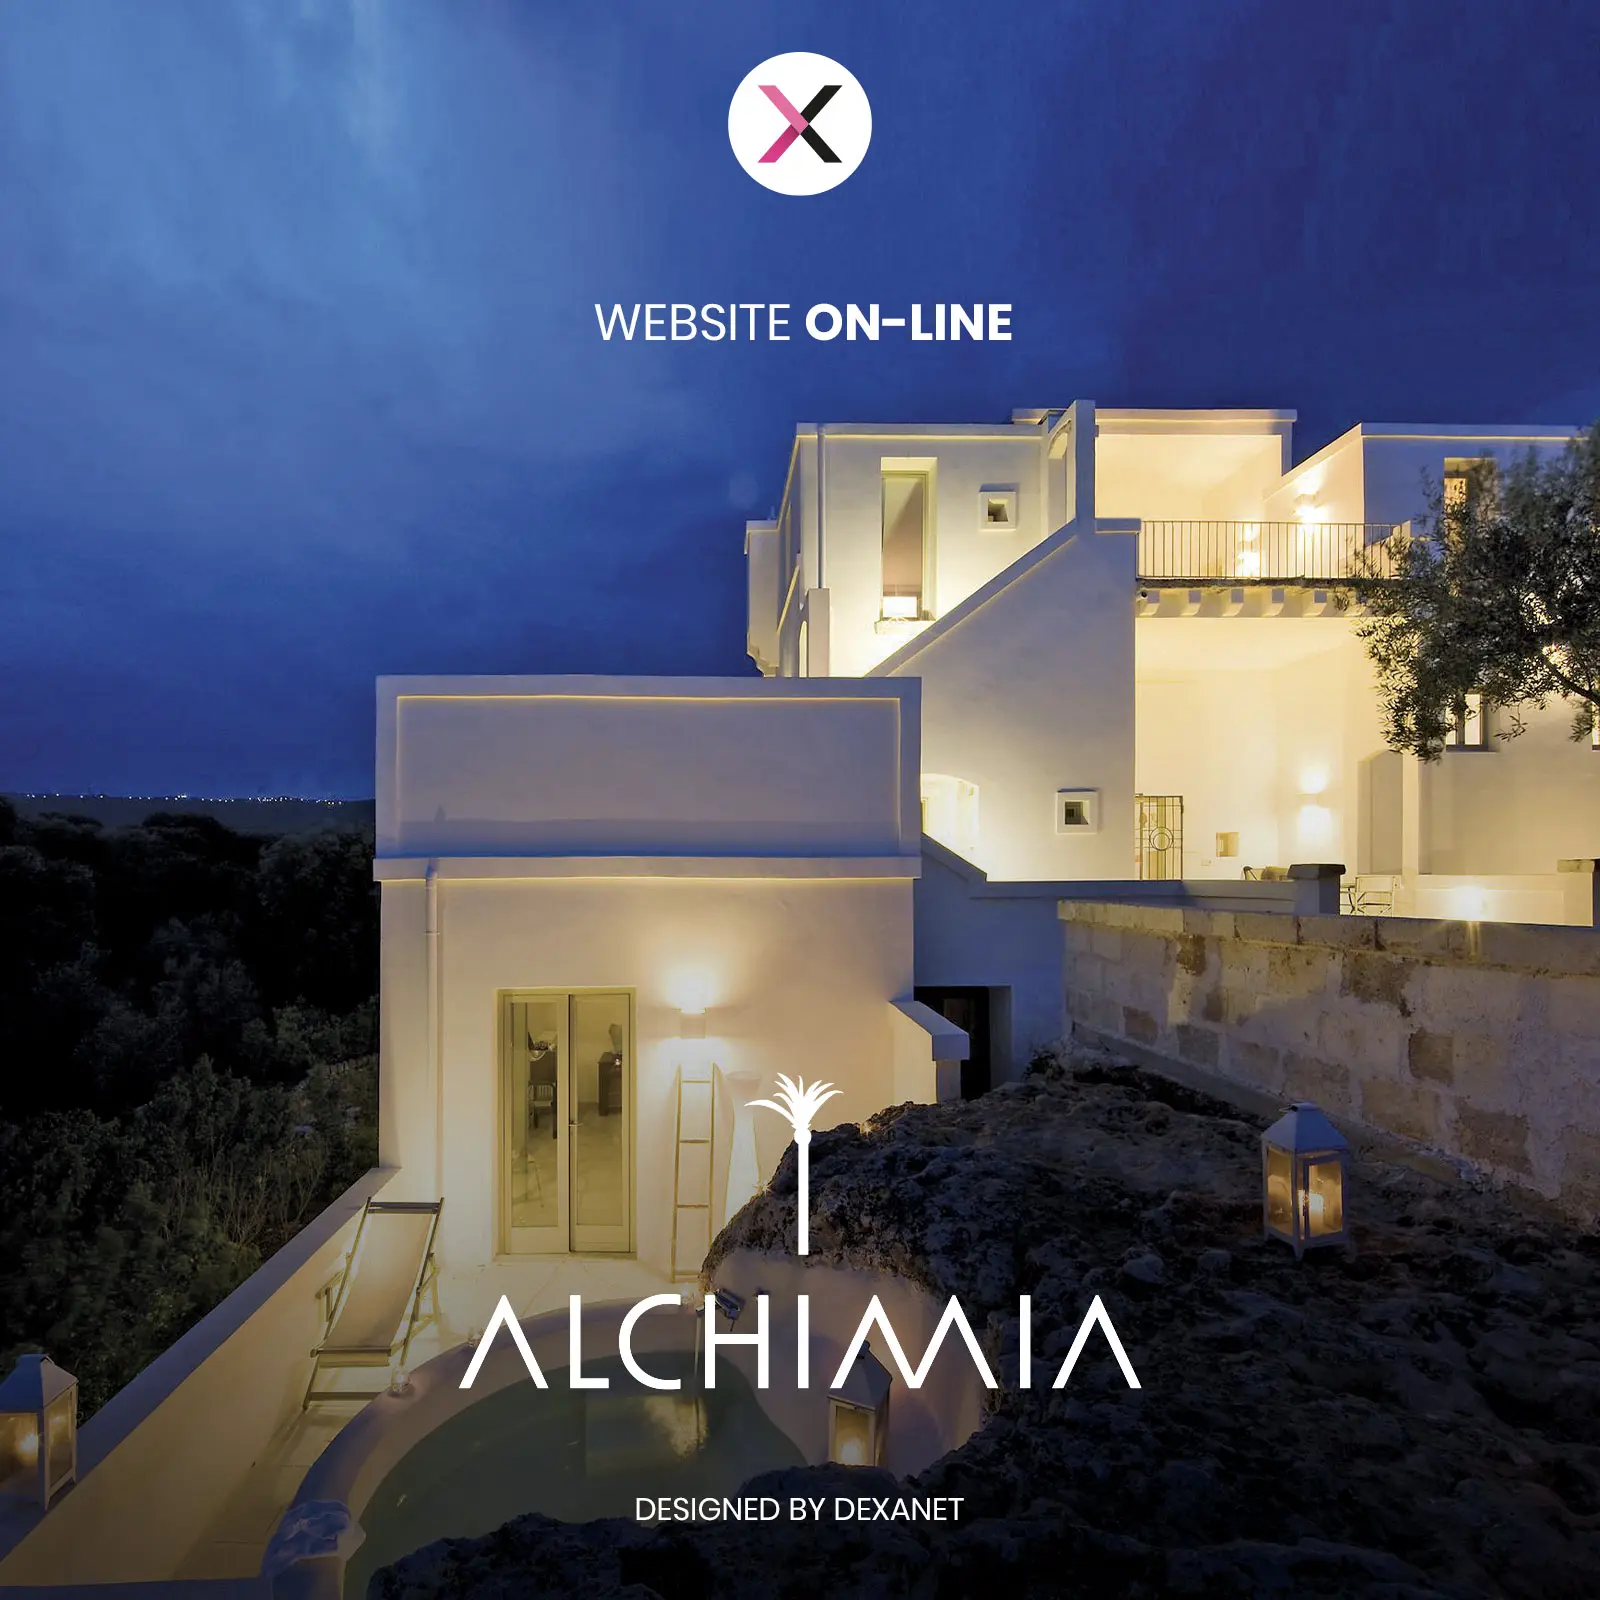 Il soggiorno online di Alchimia Collection: il nuovo sito web.